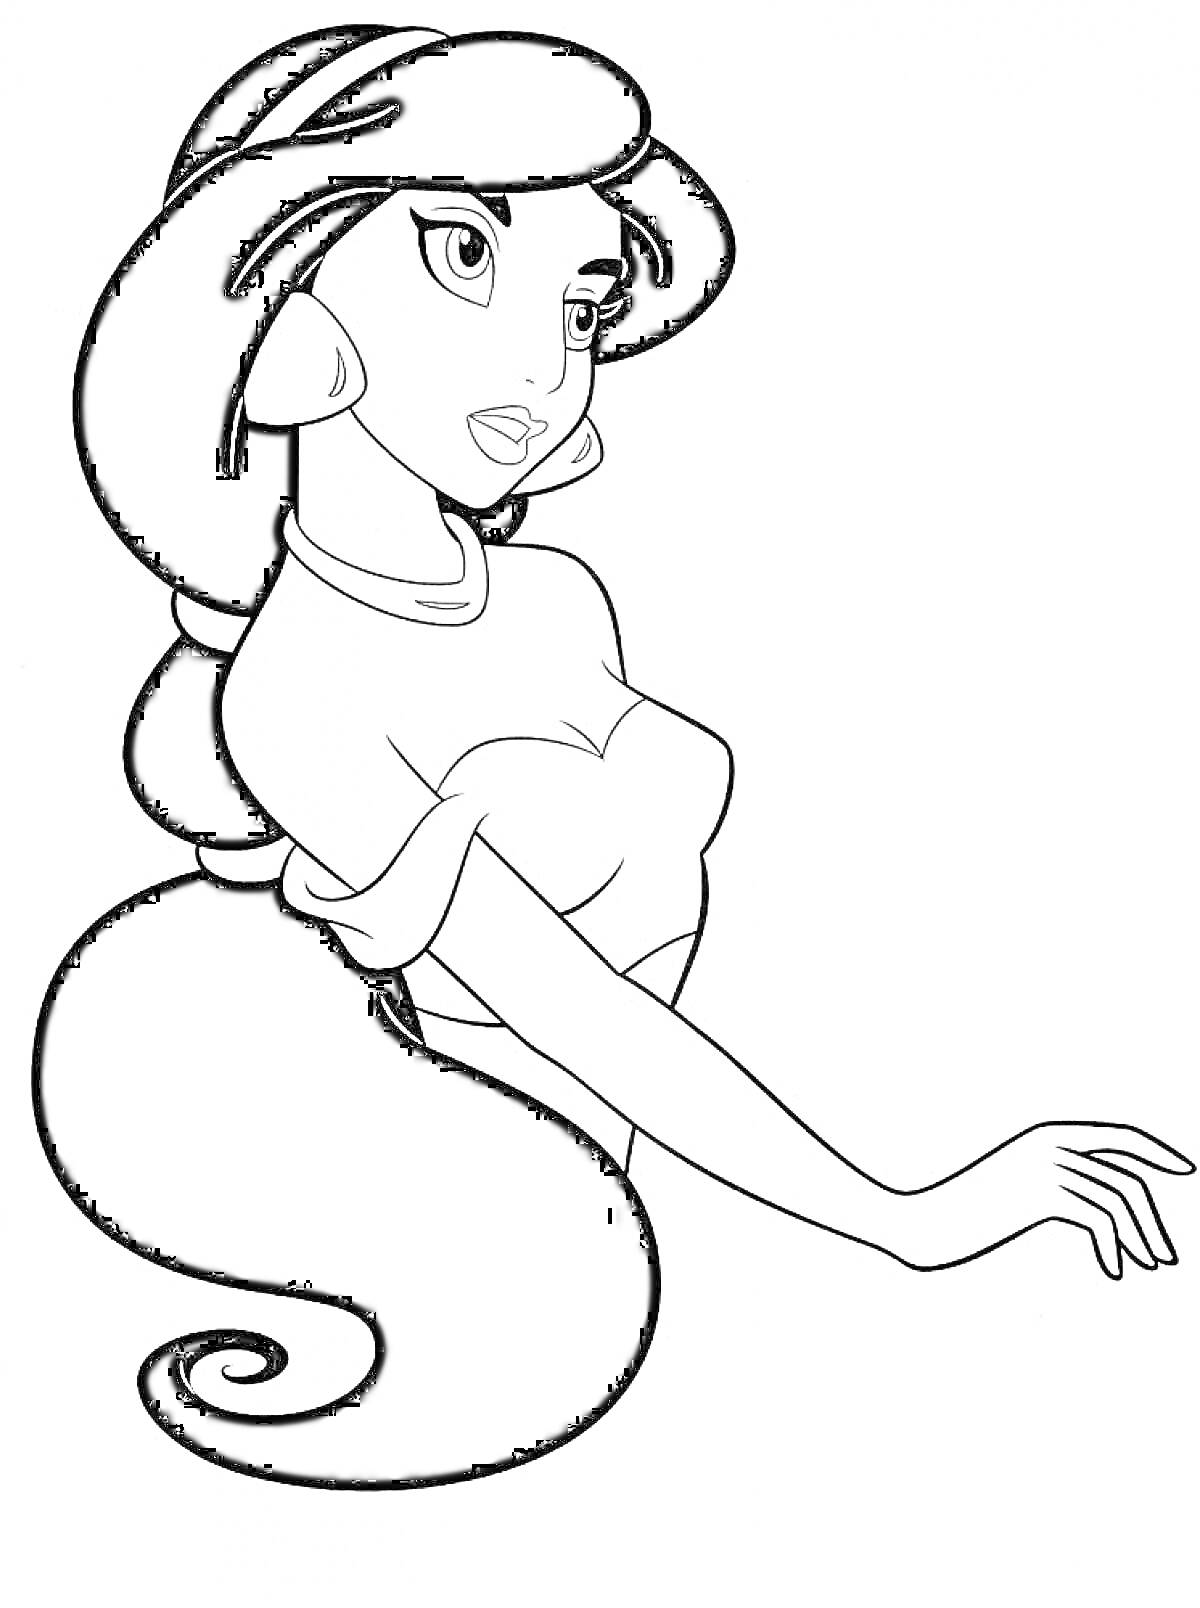 Раскраска Принцесса Жасмин с длинными волосами, стоящая в профиль, с серьгами и ожерельем